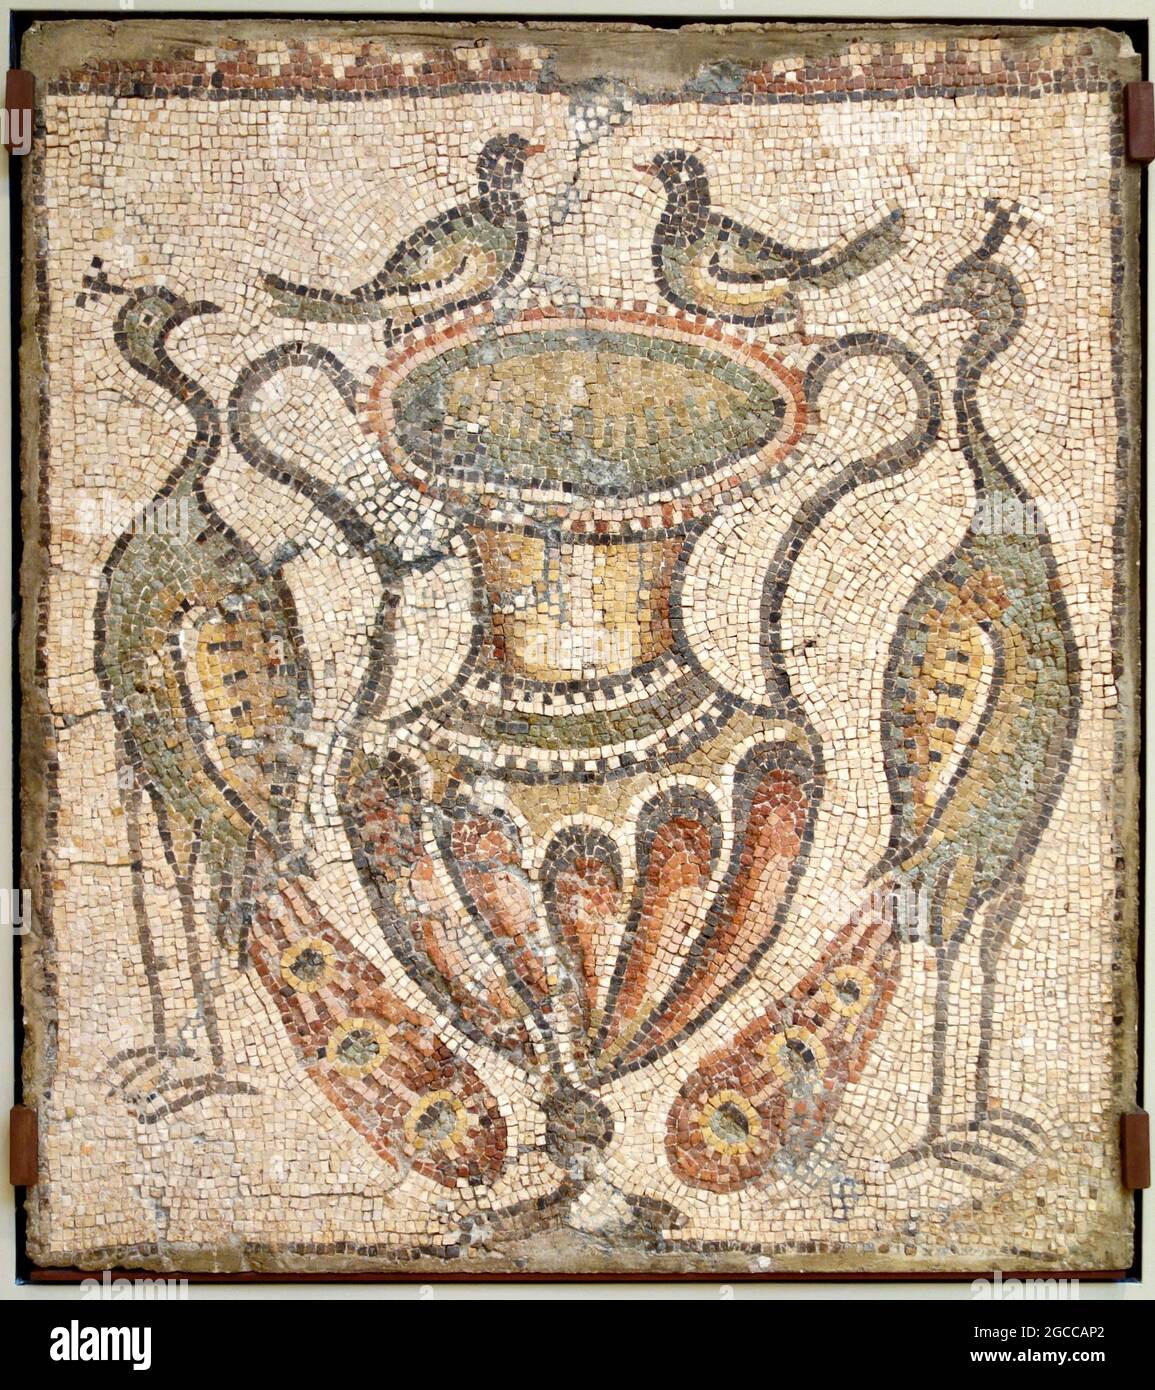 Mosaikkunst - Mosaik der Amphora mit Tauben am Rand und flankiert von den Pauen aus Homs, Syrien Stockfoto